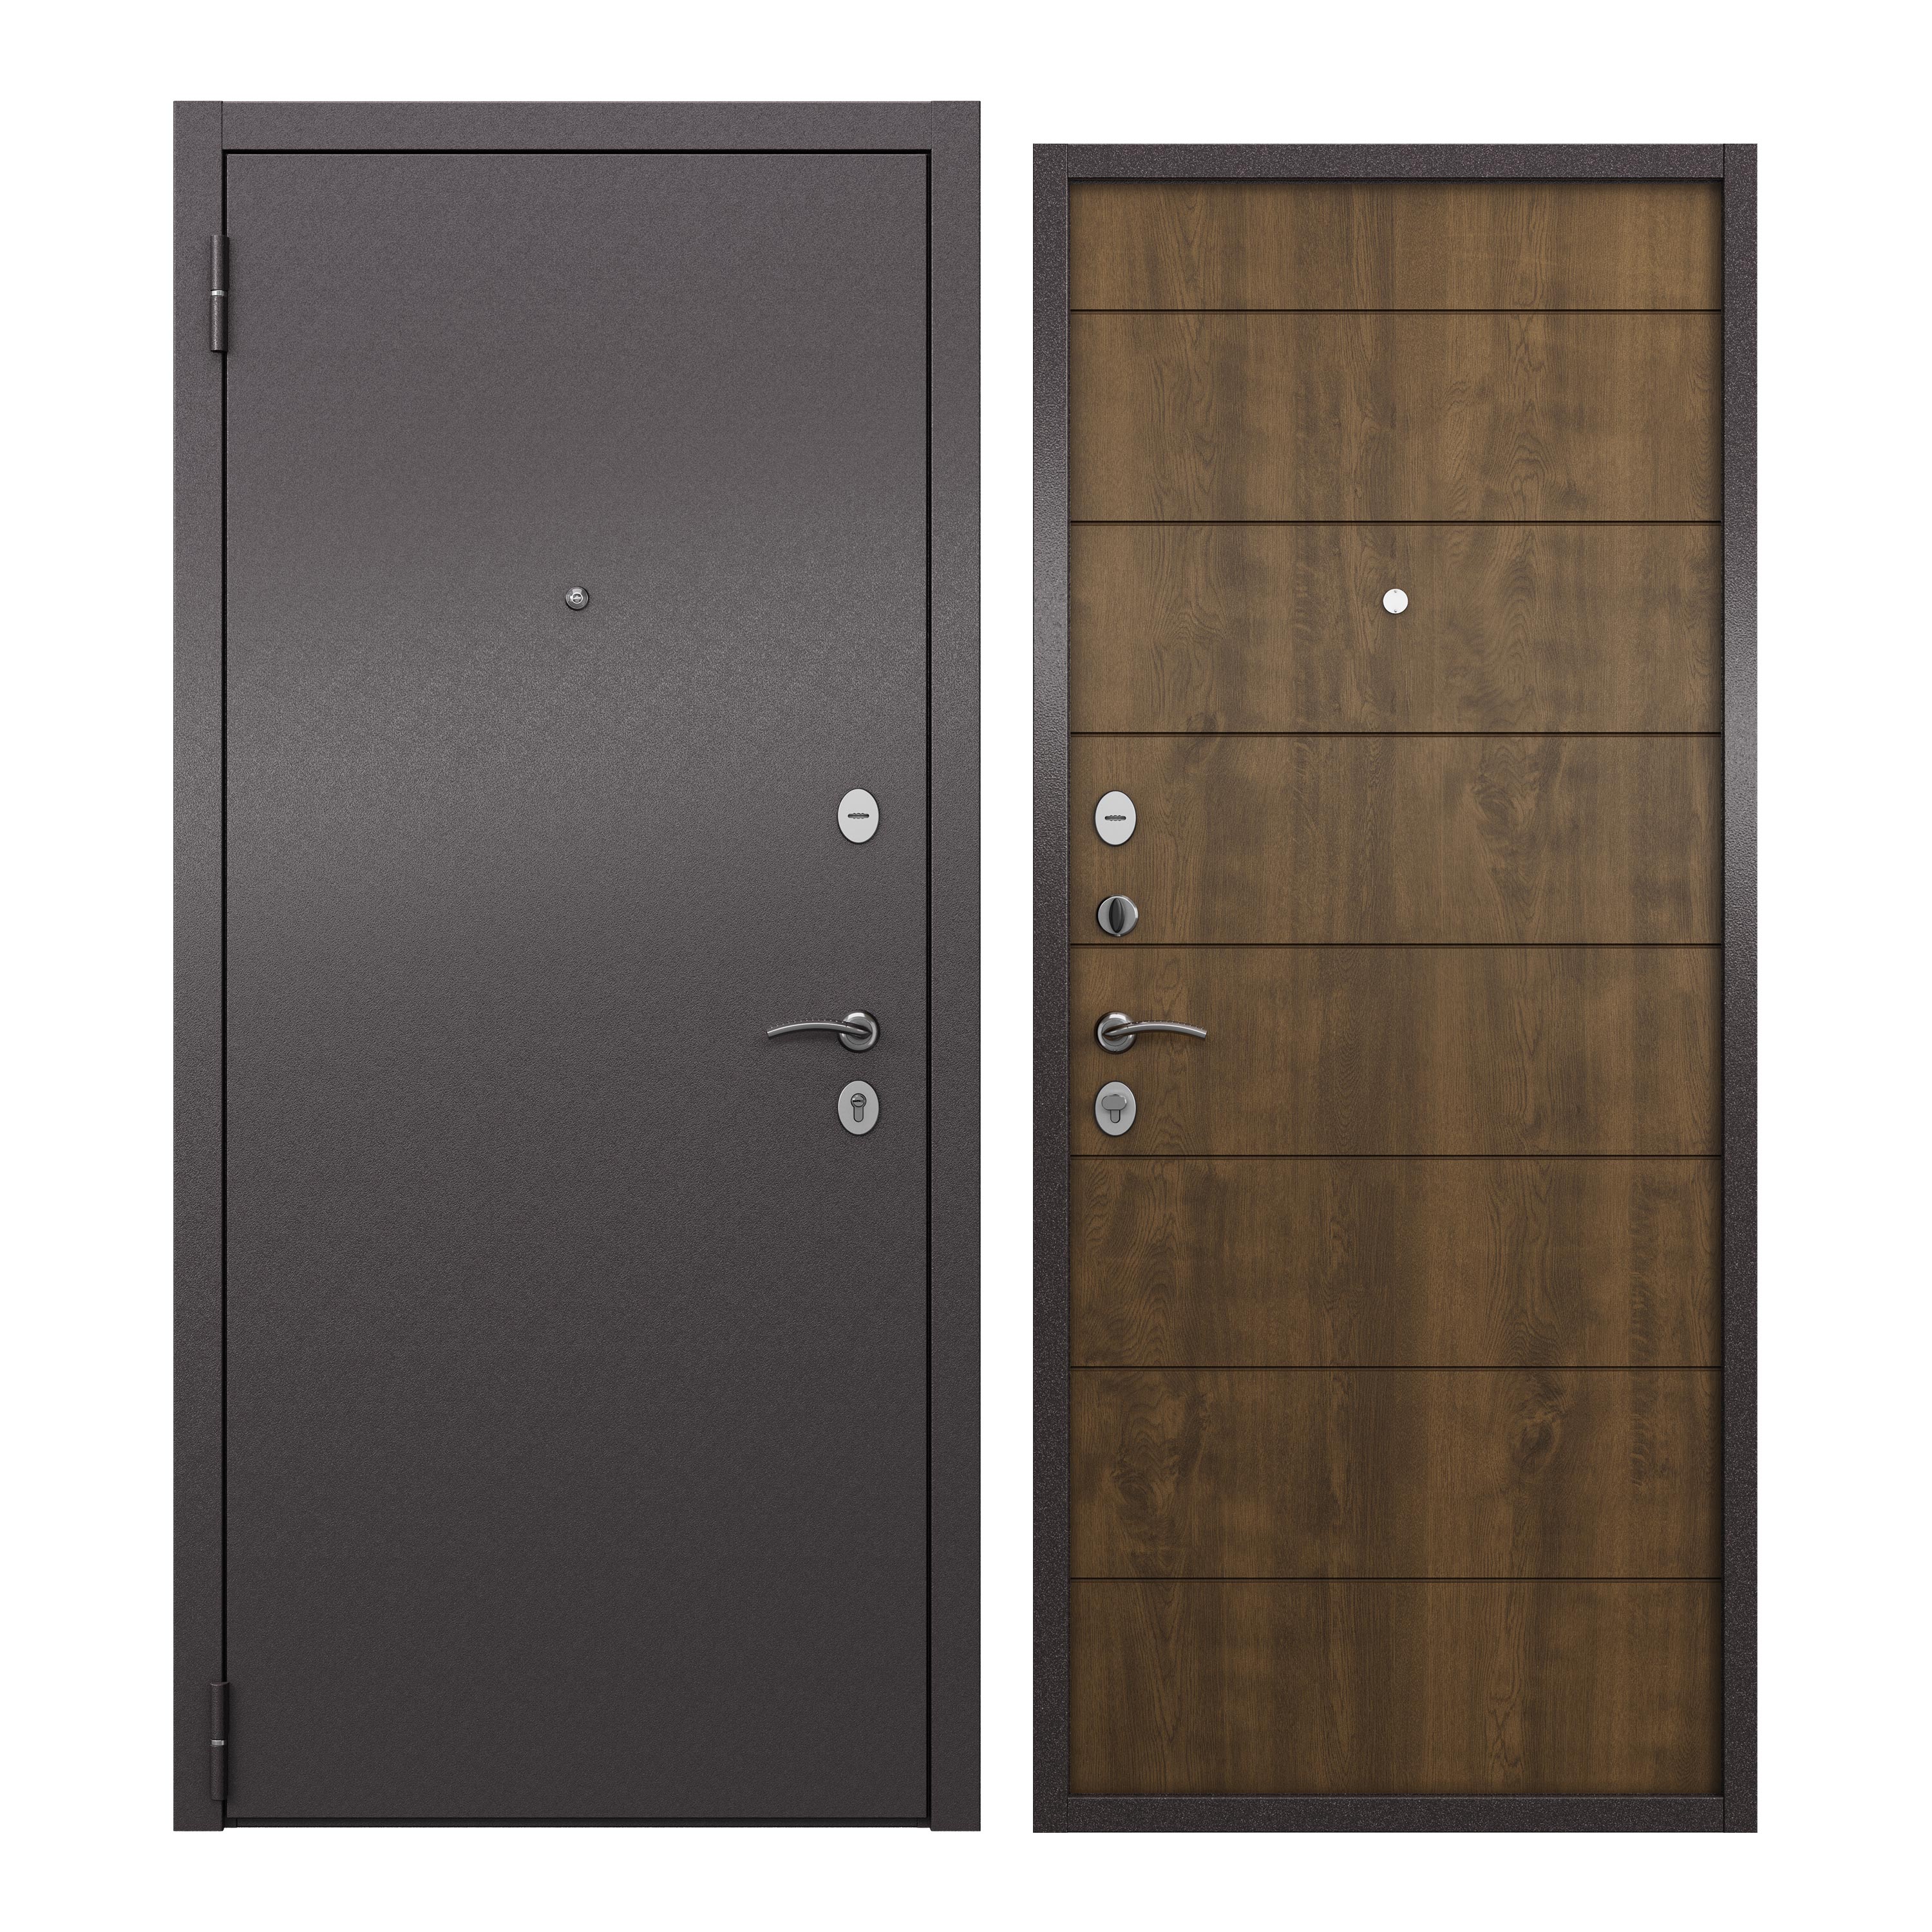 Дверь входная для квартиры ProLine металлическая Apartment 860х2050, левая, коричневый дверь входная buldoors марко левая букле шоколад дуб шале натуральный со стеклом 860х2050 мм